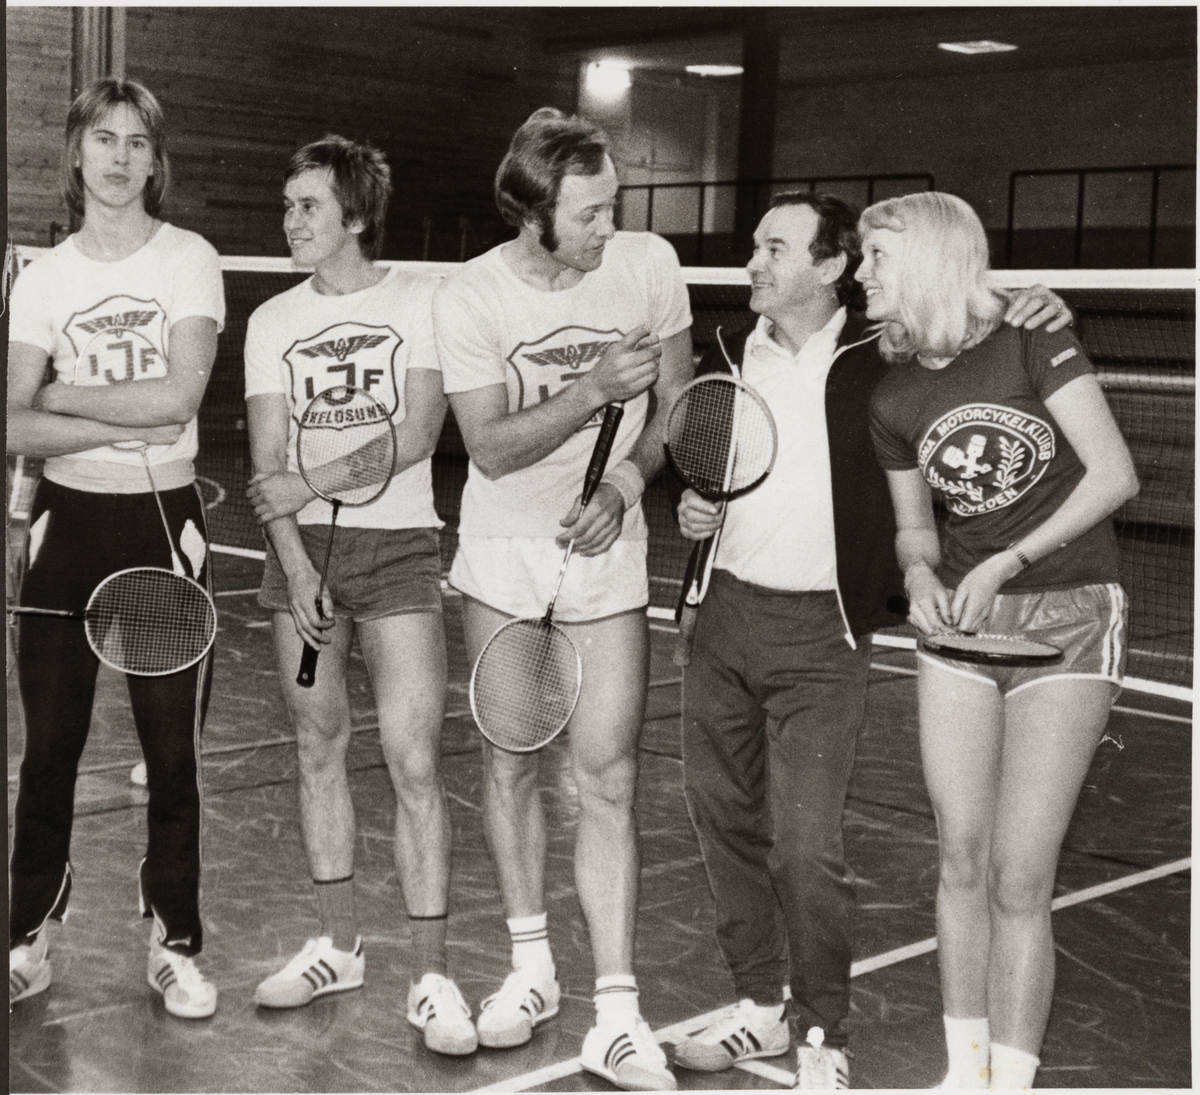 Badmintonspelare vid Järnvägens Idrottsförening, från vänster: Stefan Holm, Oxelösund, Kaj Persson, Oxelösund, Ulf Nilsson, Oxelösund, Lars Lindkvist, Eskilstuna och Britt-Inger "Tjorvan" Gustafsson, Eskilstuna.